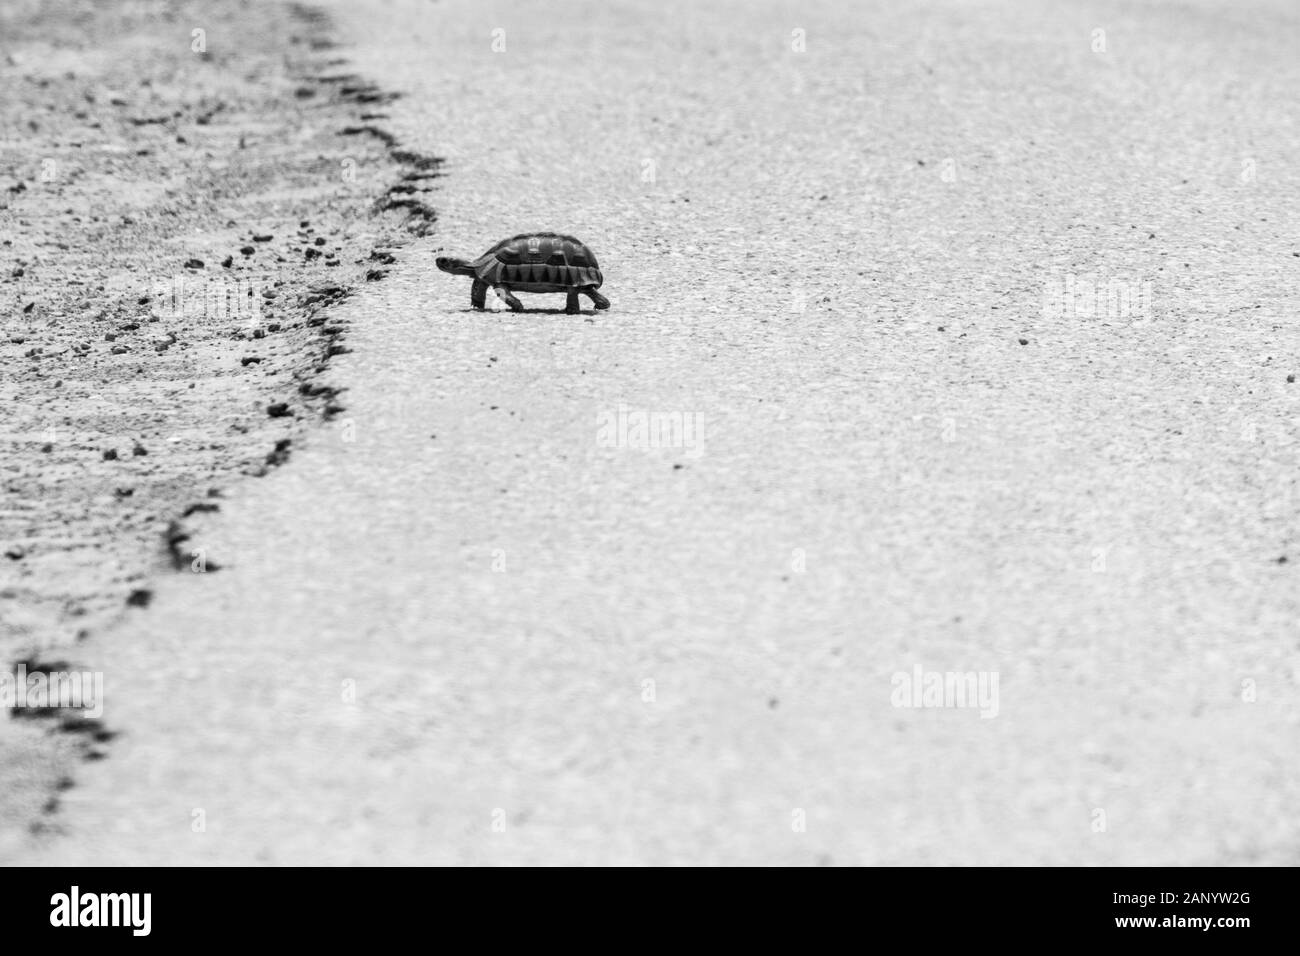 Photo en échelle de gris d'une tortue marchant au chaud asphalte d'une route Banque D'Images